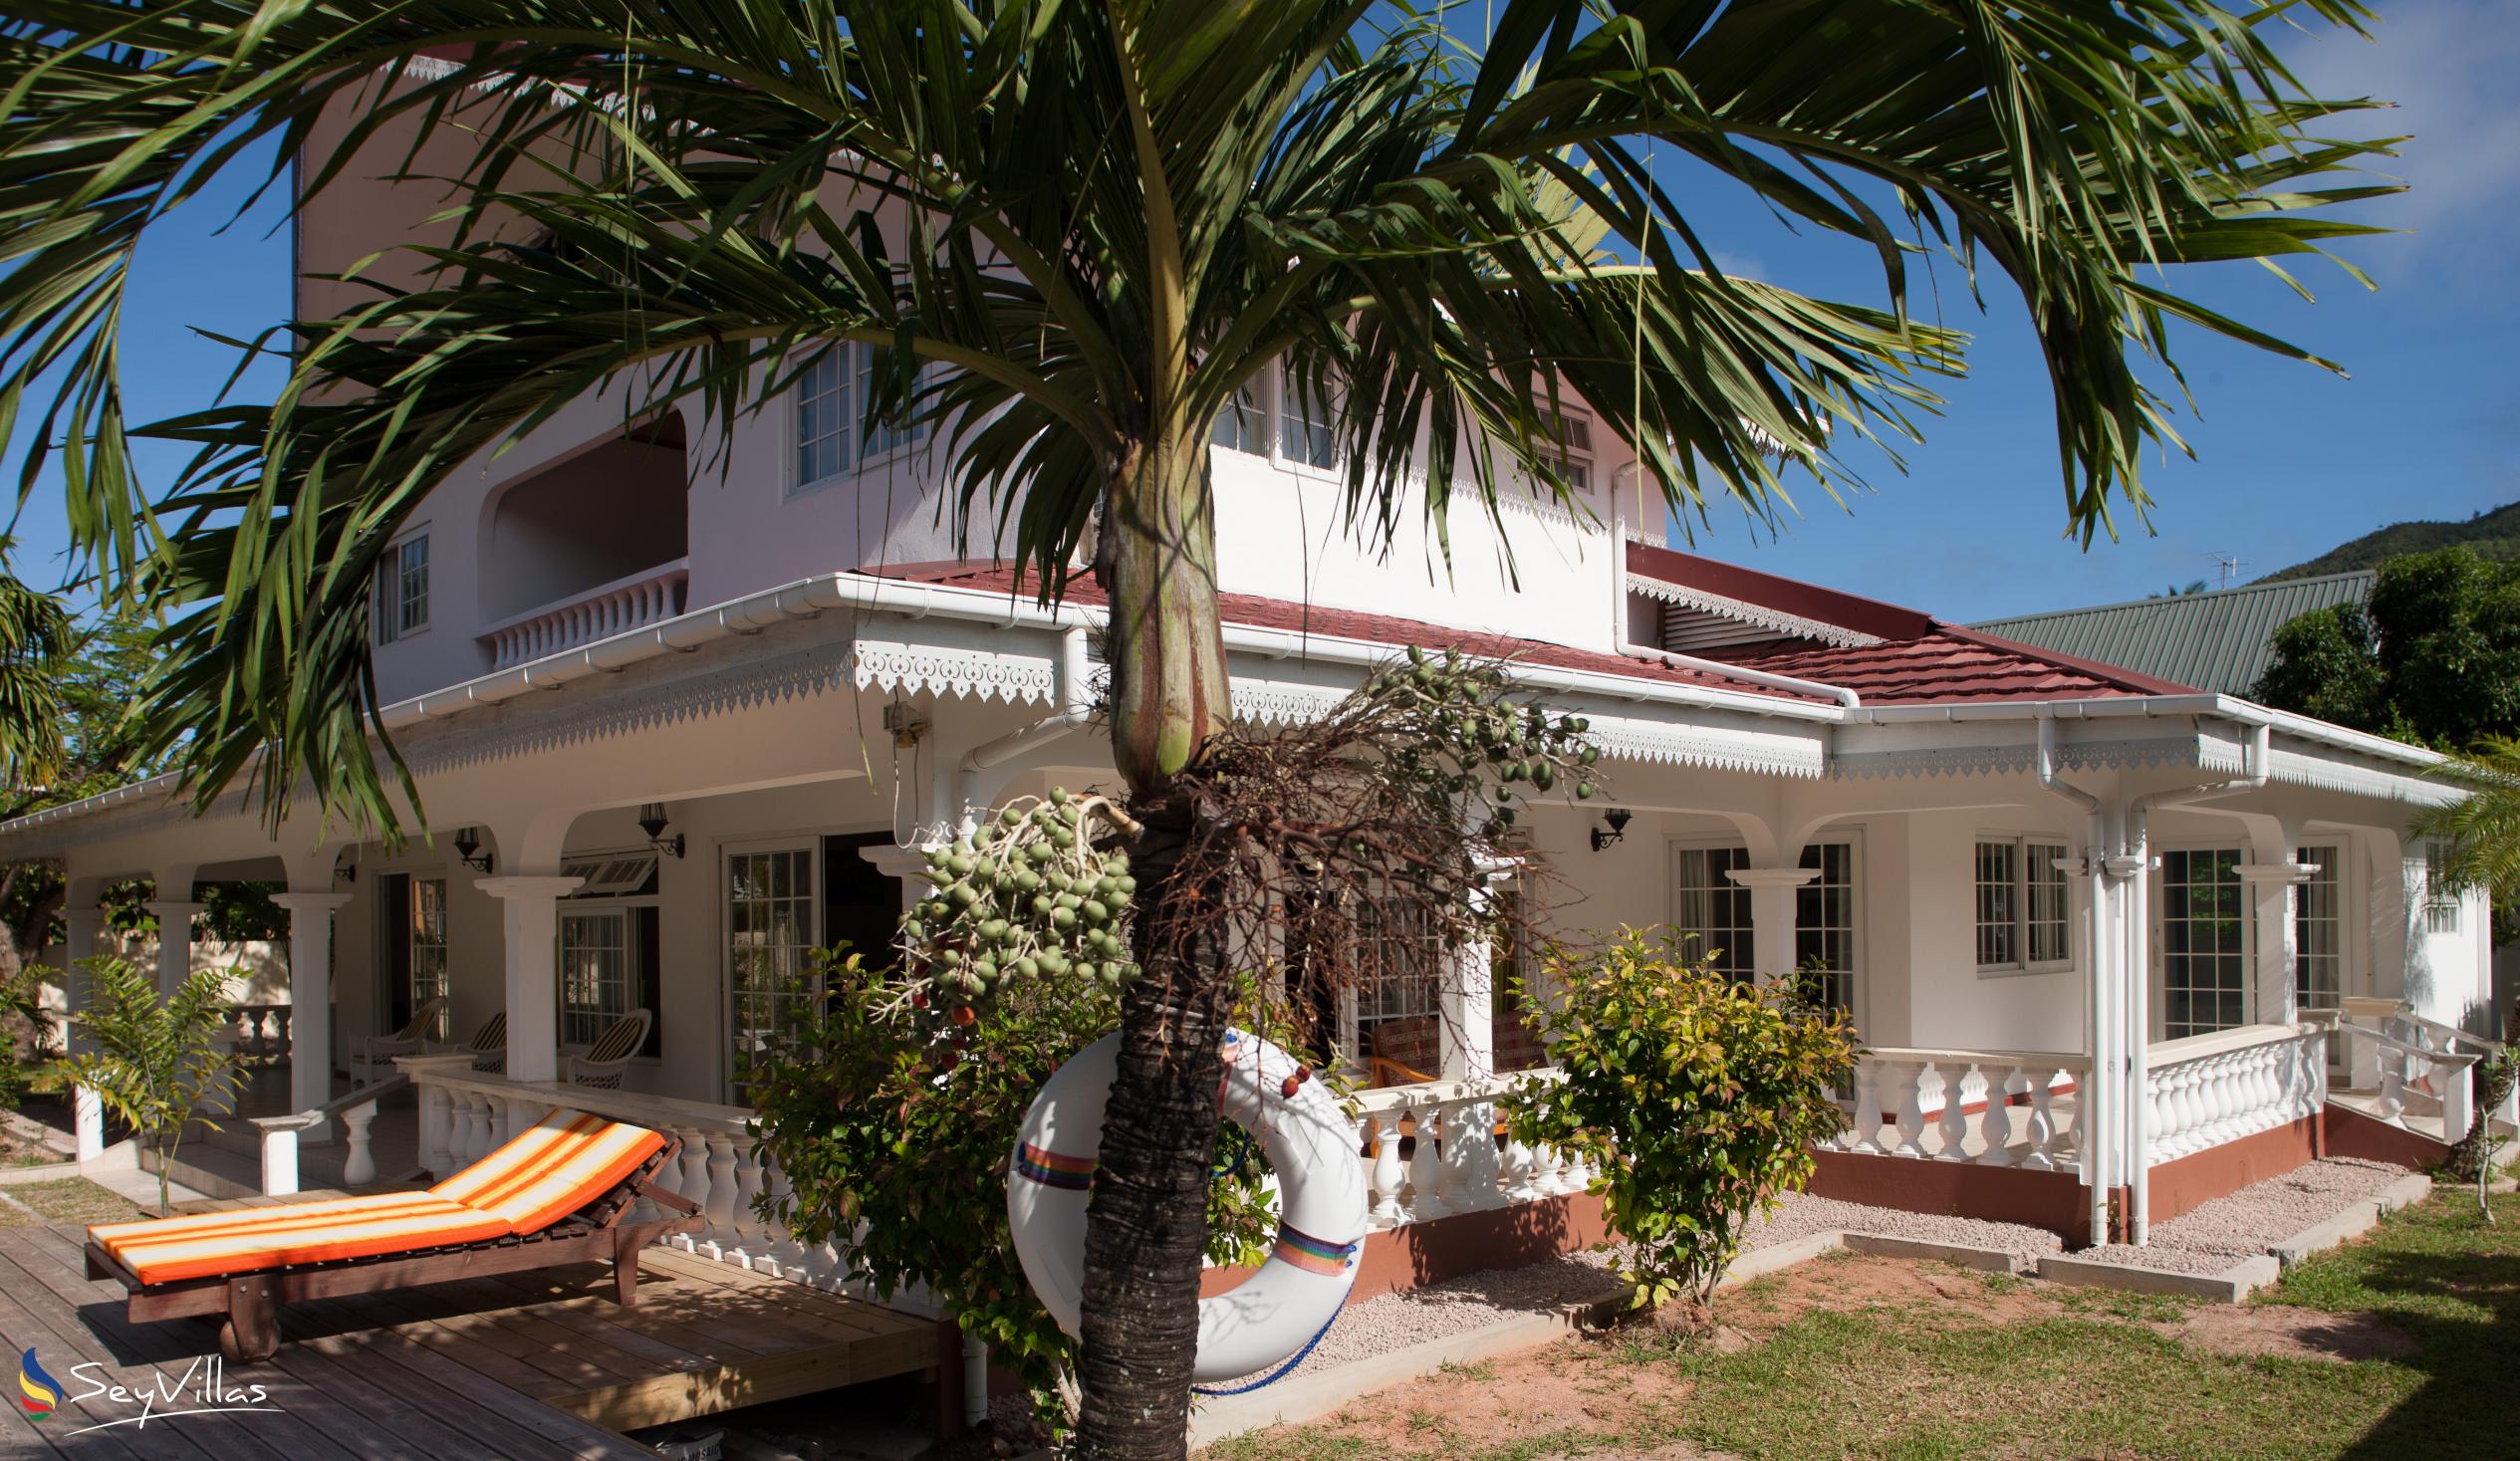 Foto 5: Villa Confort - Esterno - Praslin (Seychelles)